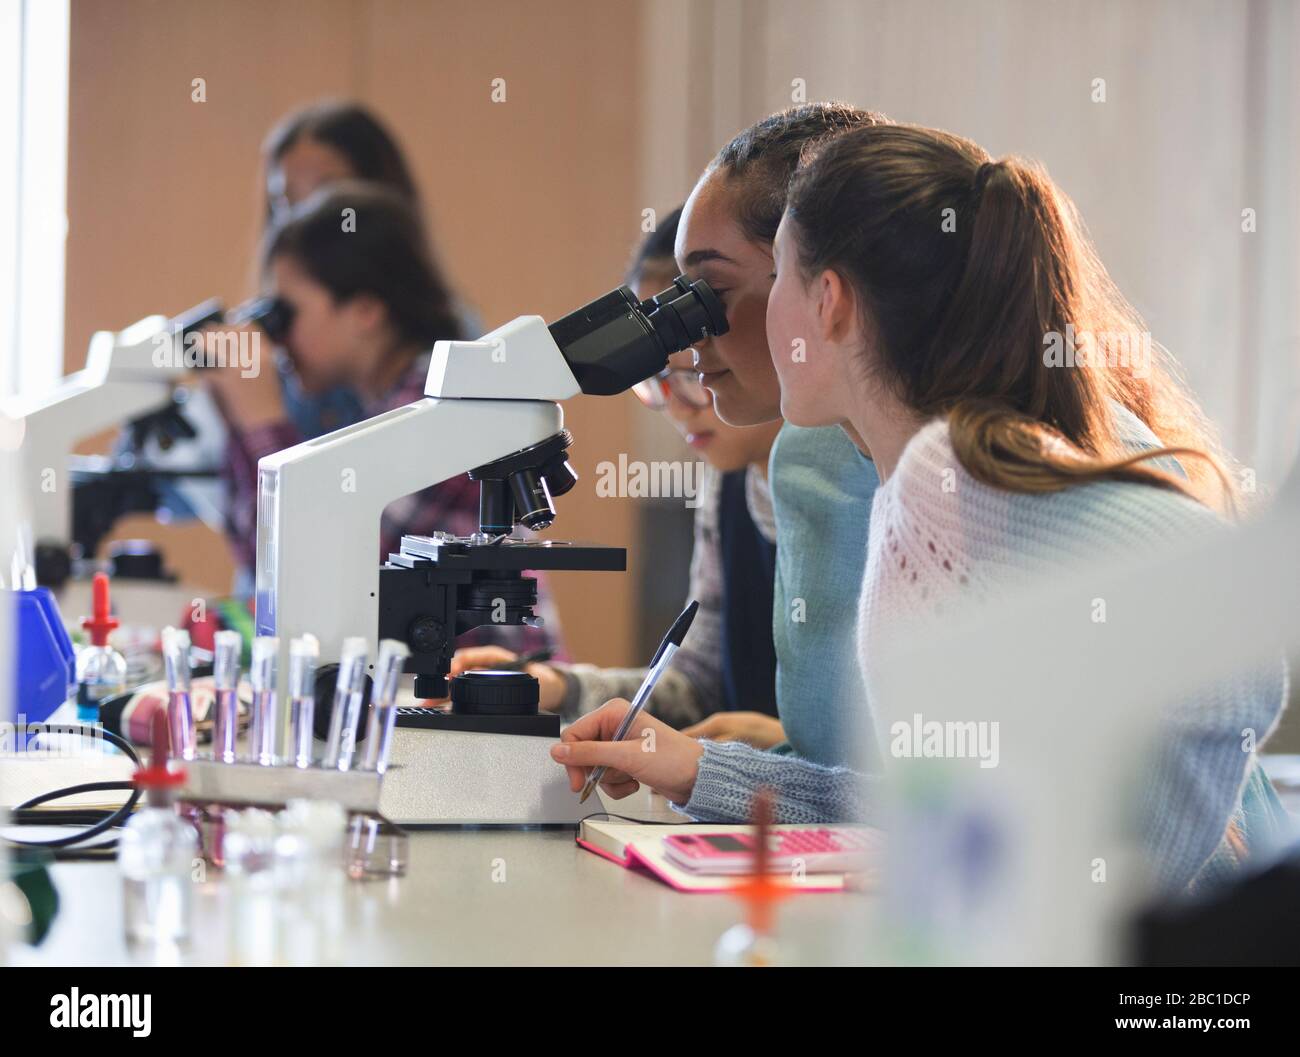 Studenten mit Mikroskop, die wissenschaftliche Experimente im Laborunterricht durchführen Stockfoto